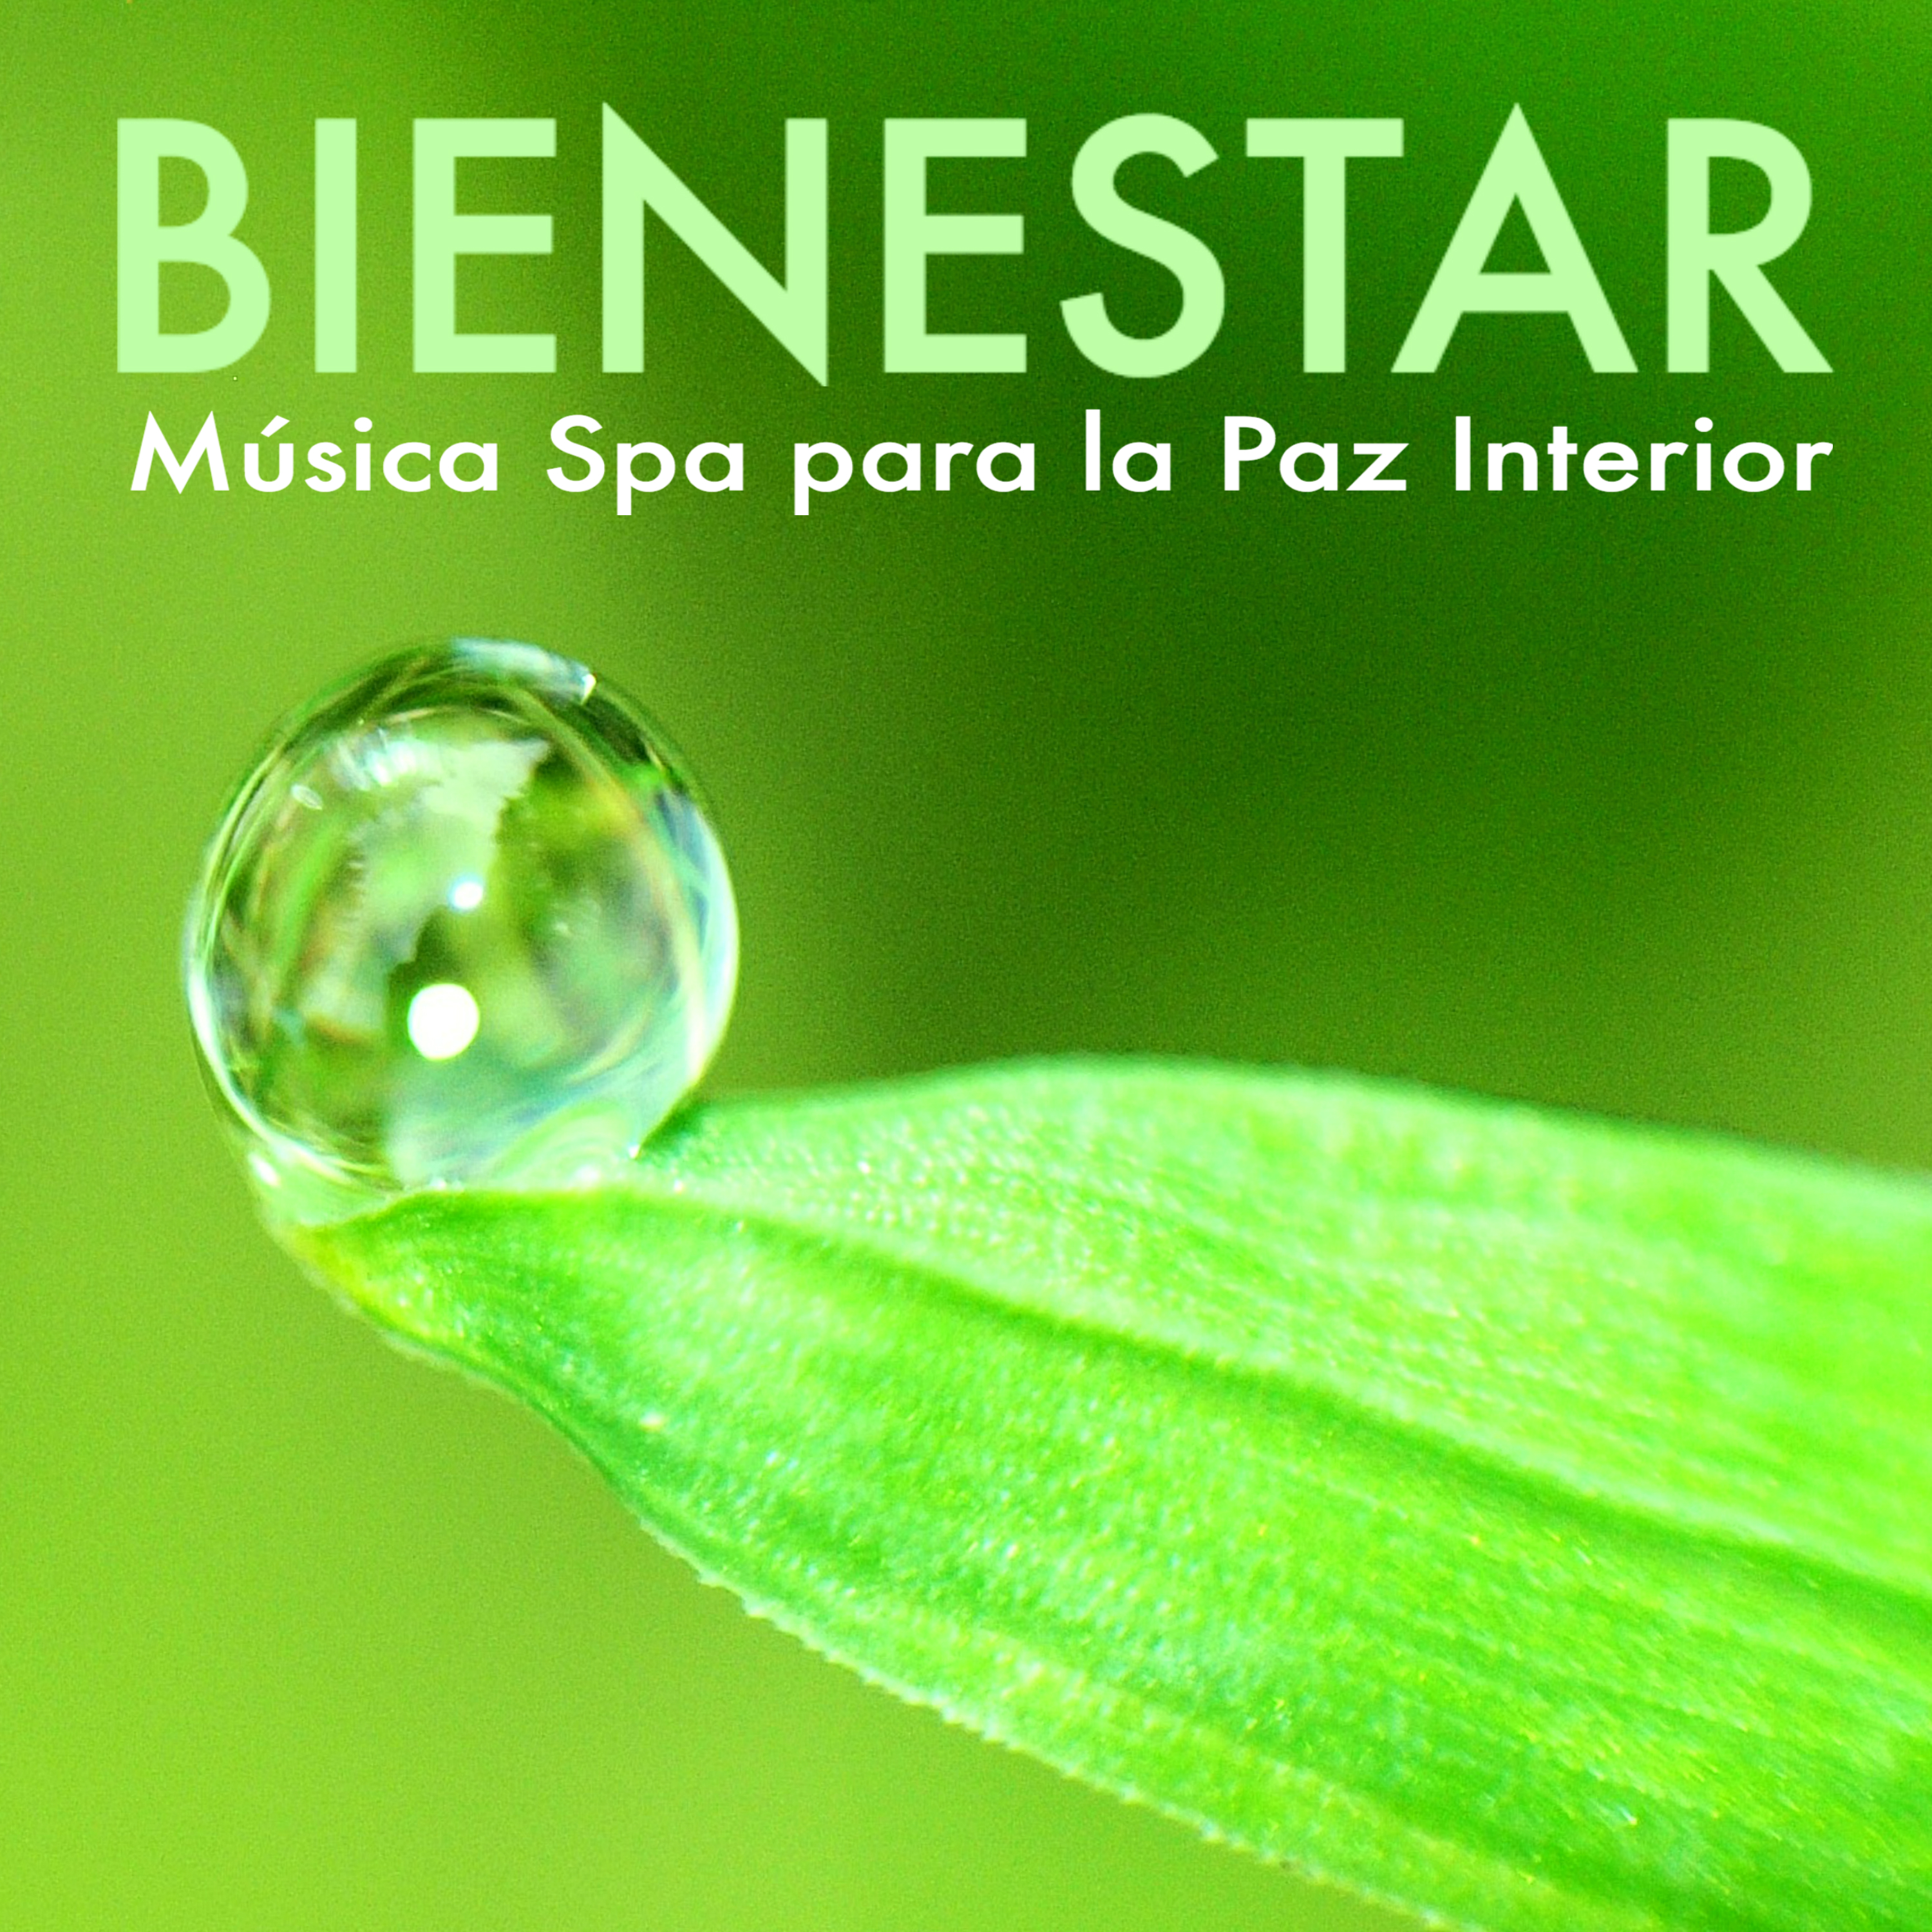 Bienestar Spa - Musica para Encontrar la Paz Interior, Canciones para Sanar el Cuerpo y el Alma